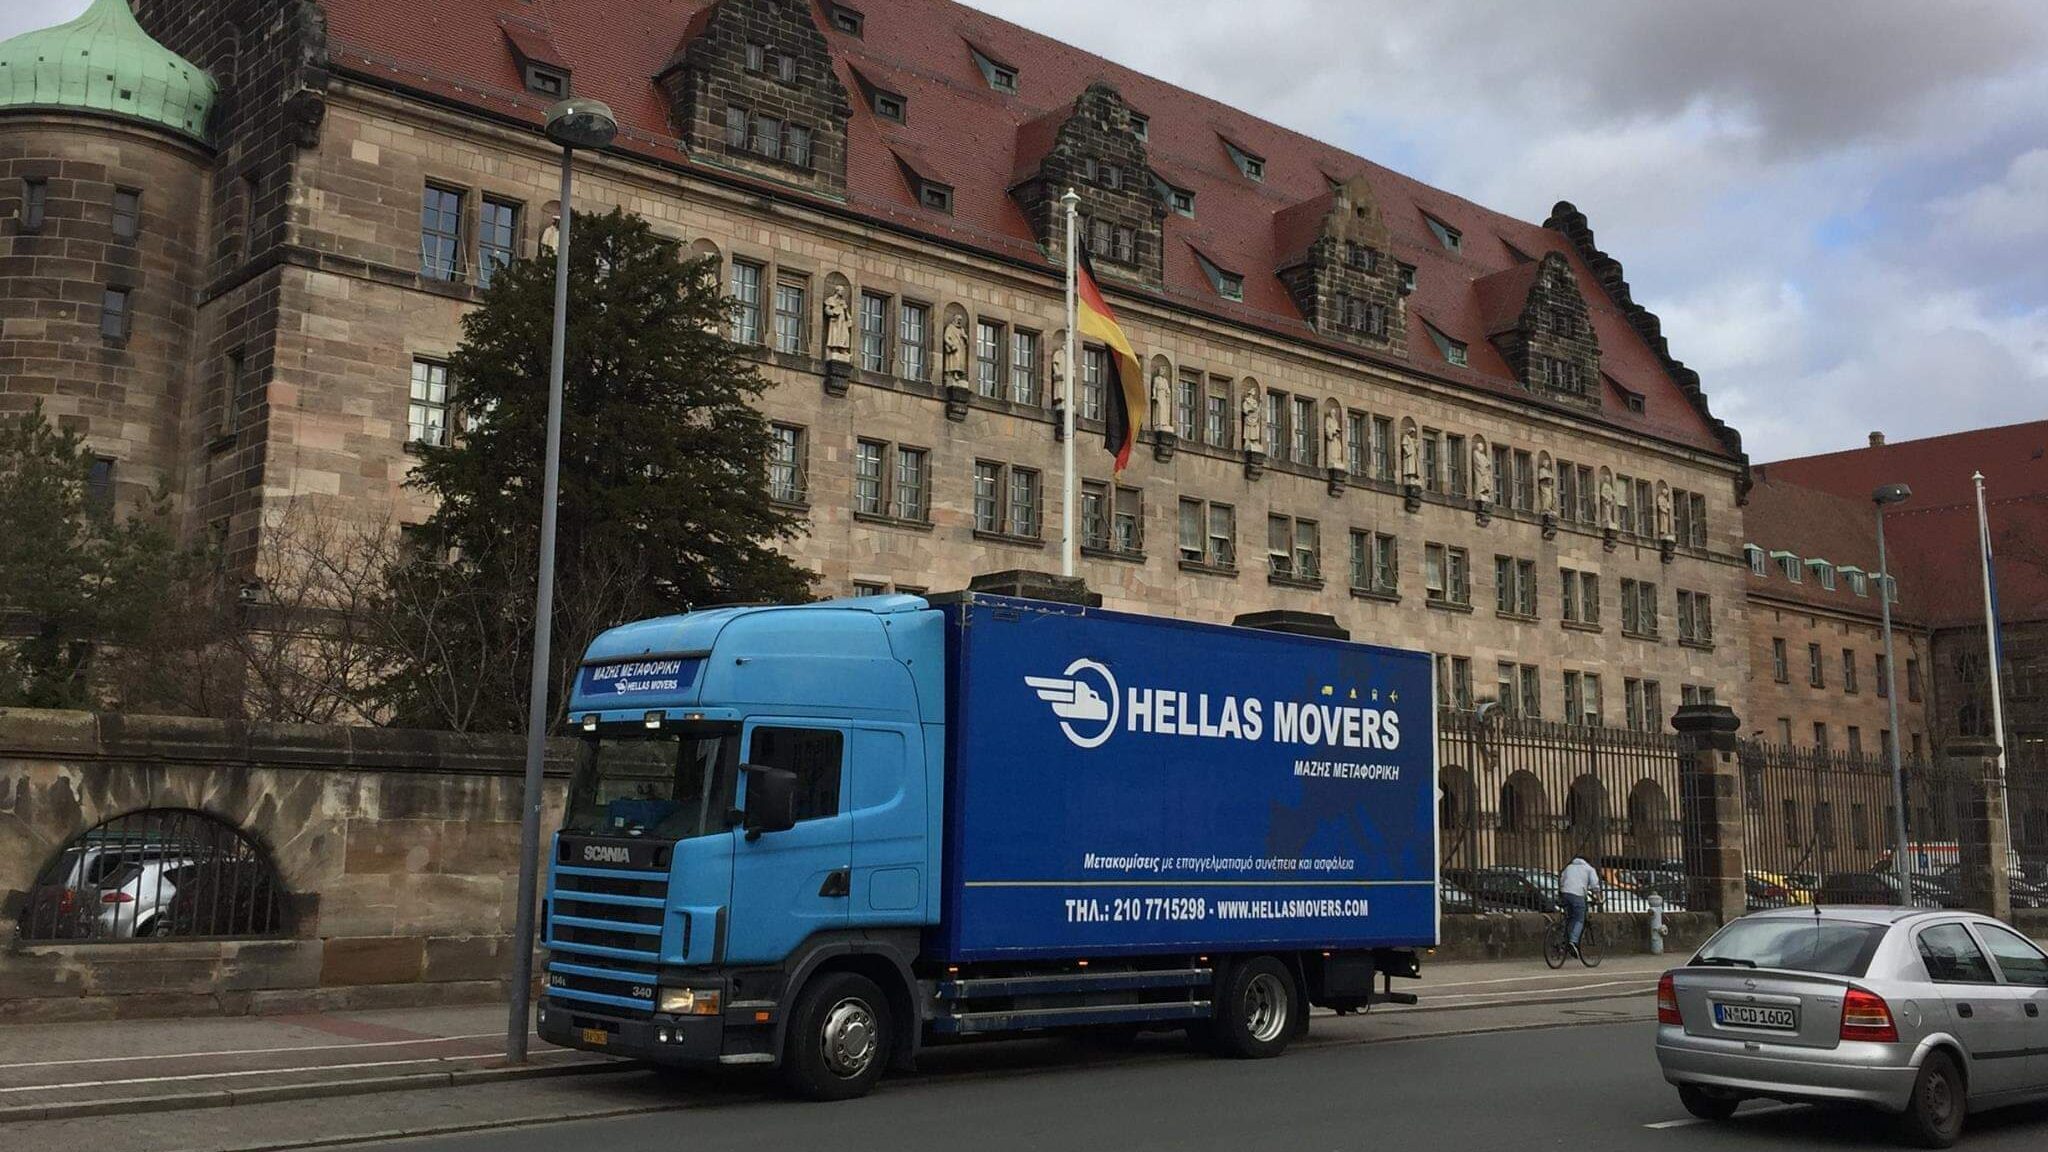 Μετακομιση στη Γερμανία Χρισόφορος Μάζης Χριστόφορος Μάζης Μεταφορές Μετακομίσεις Χριστόφορος | Hellas Movers